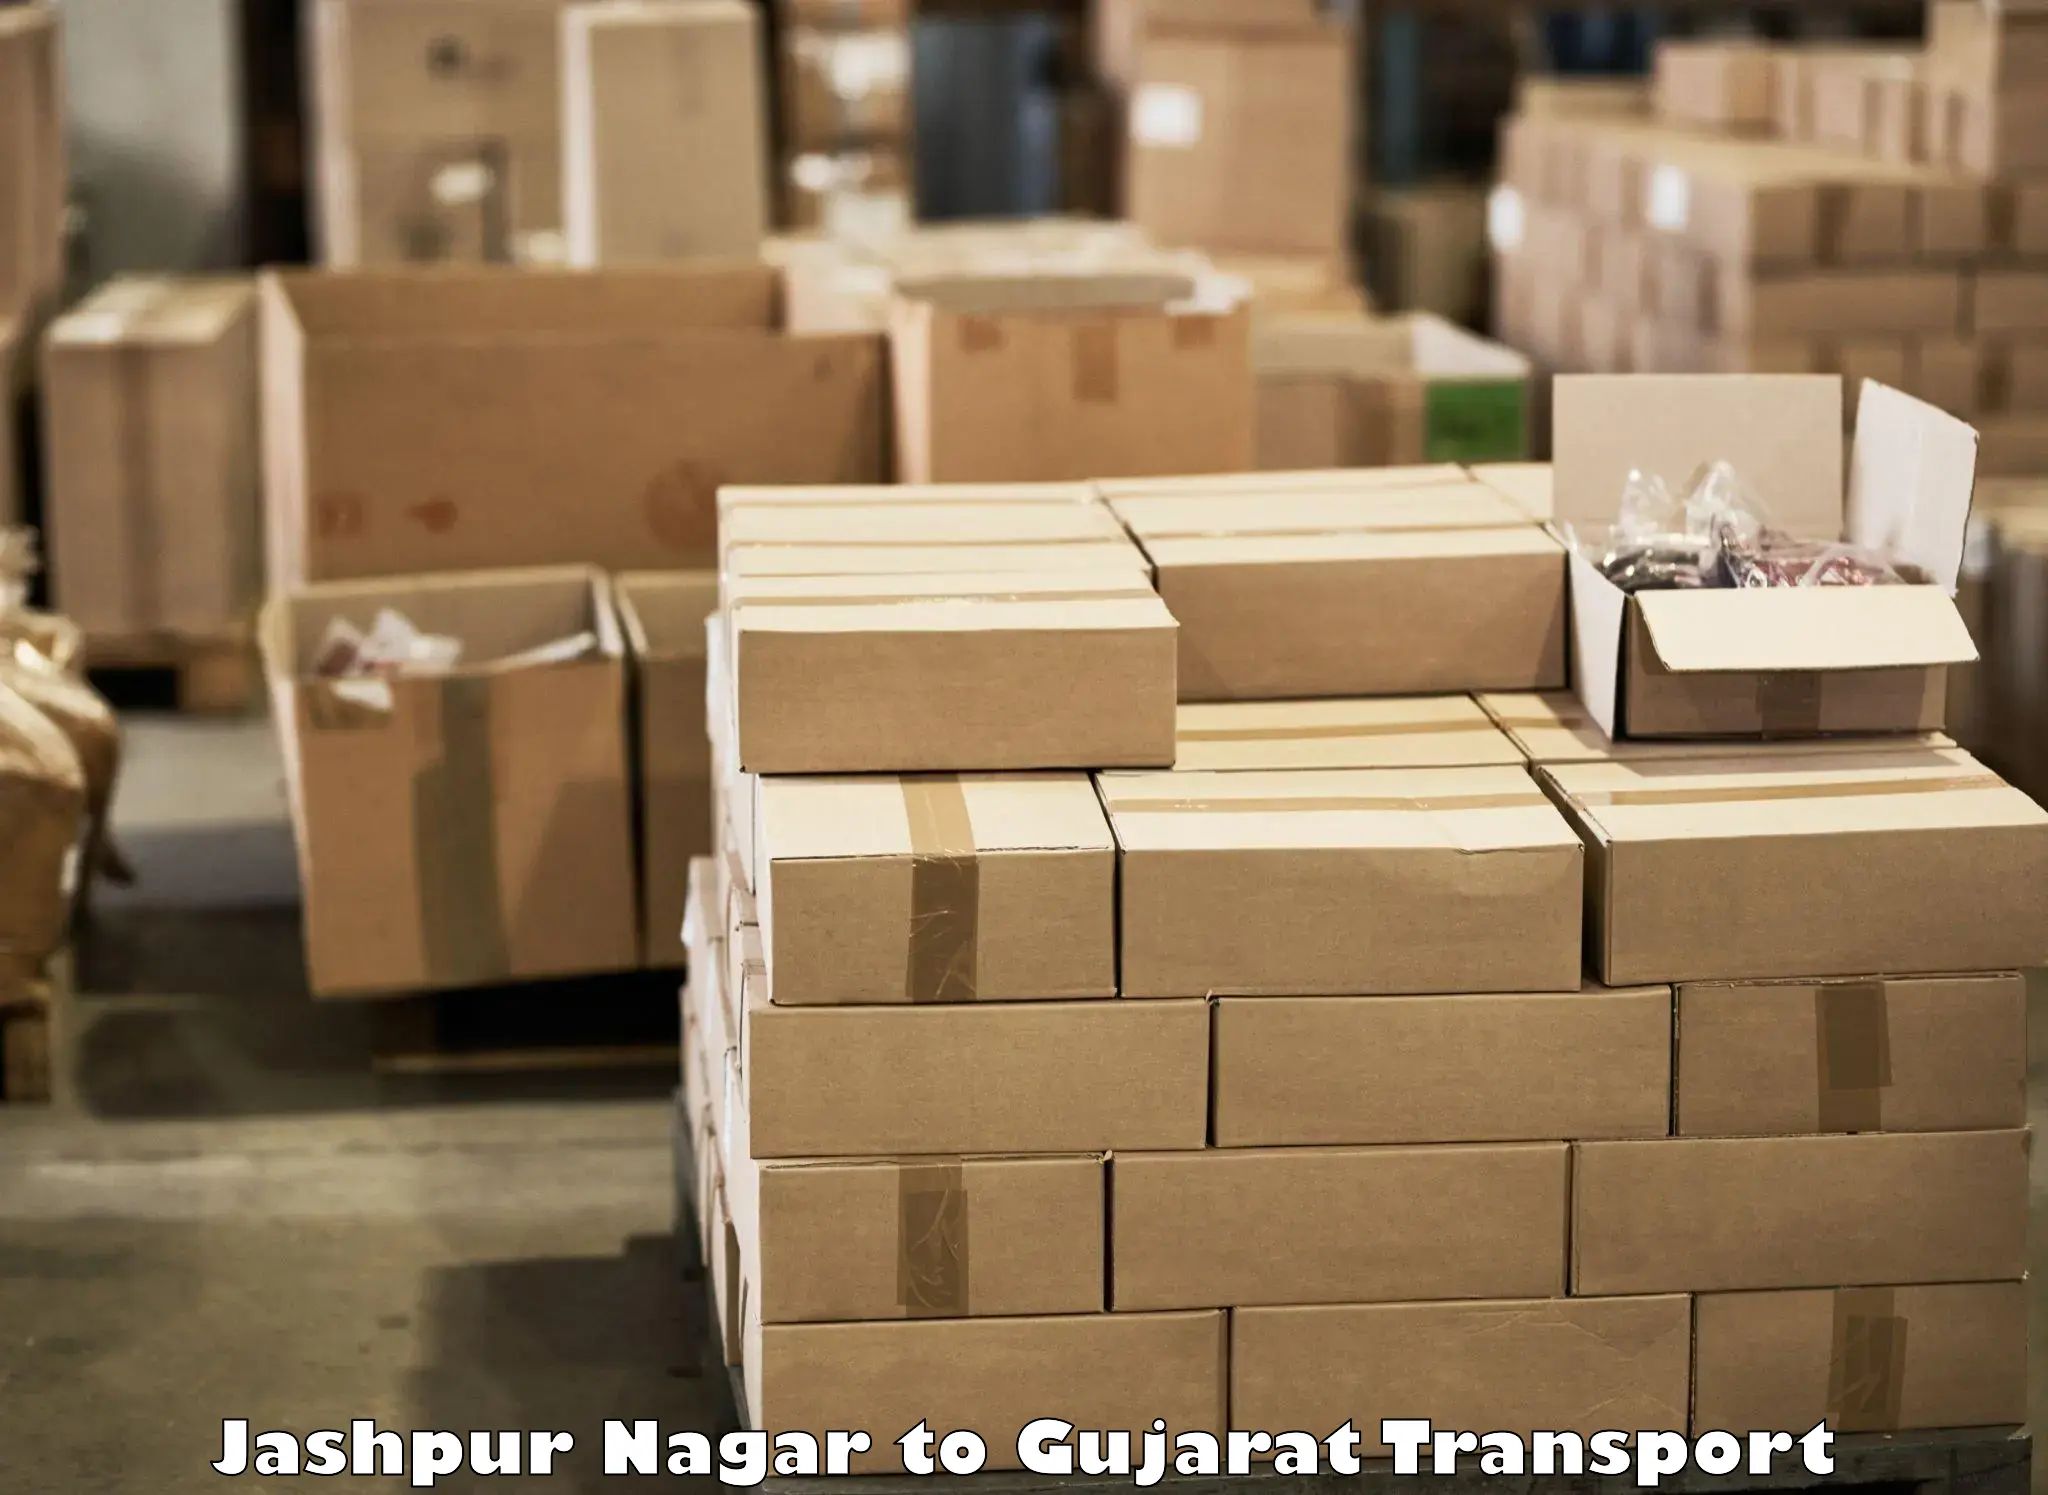 Daily parcel service transport Jashpur Nagar to Ambaji